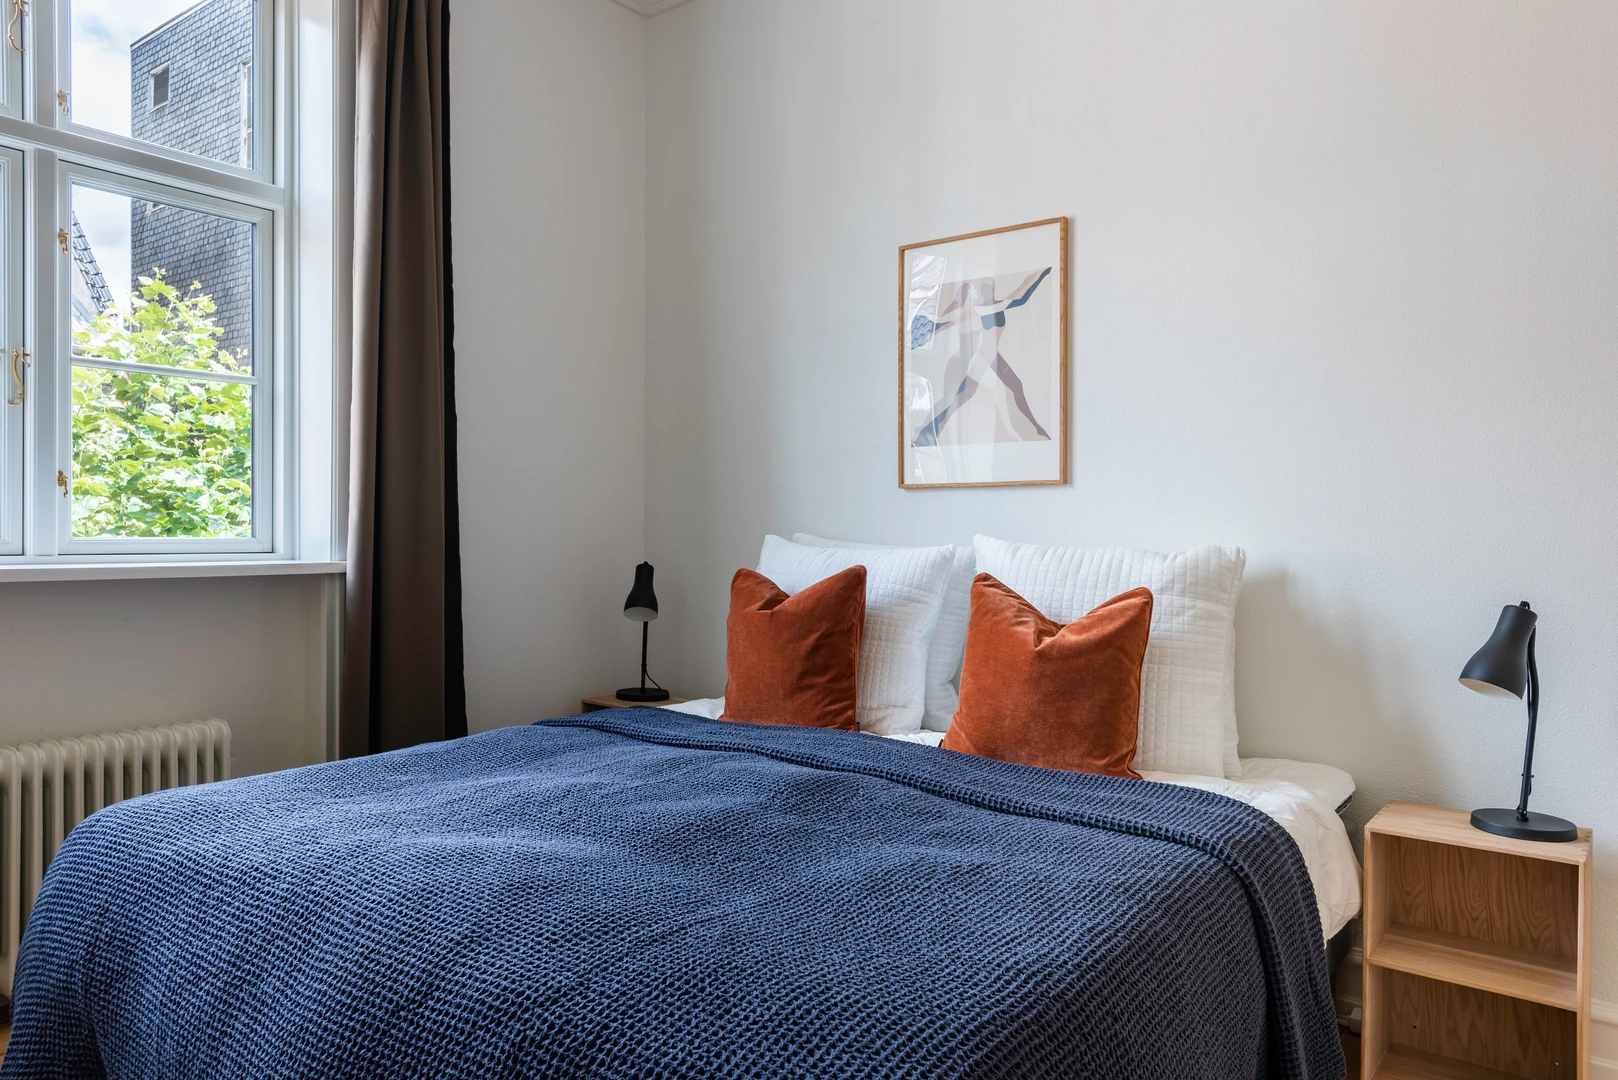 København de çift kişilik yataklı kiralık oda